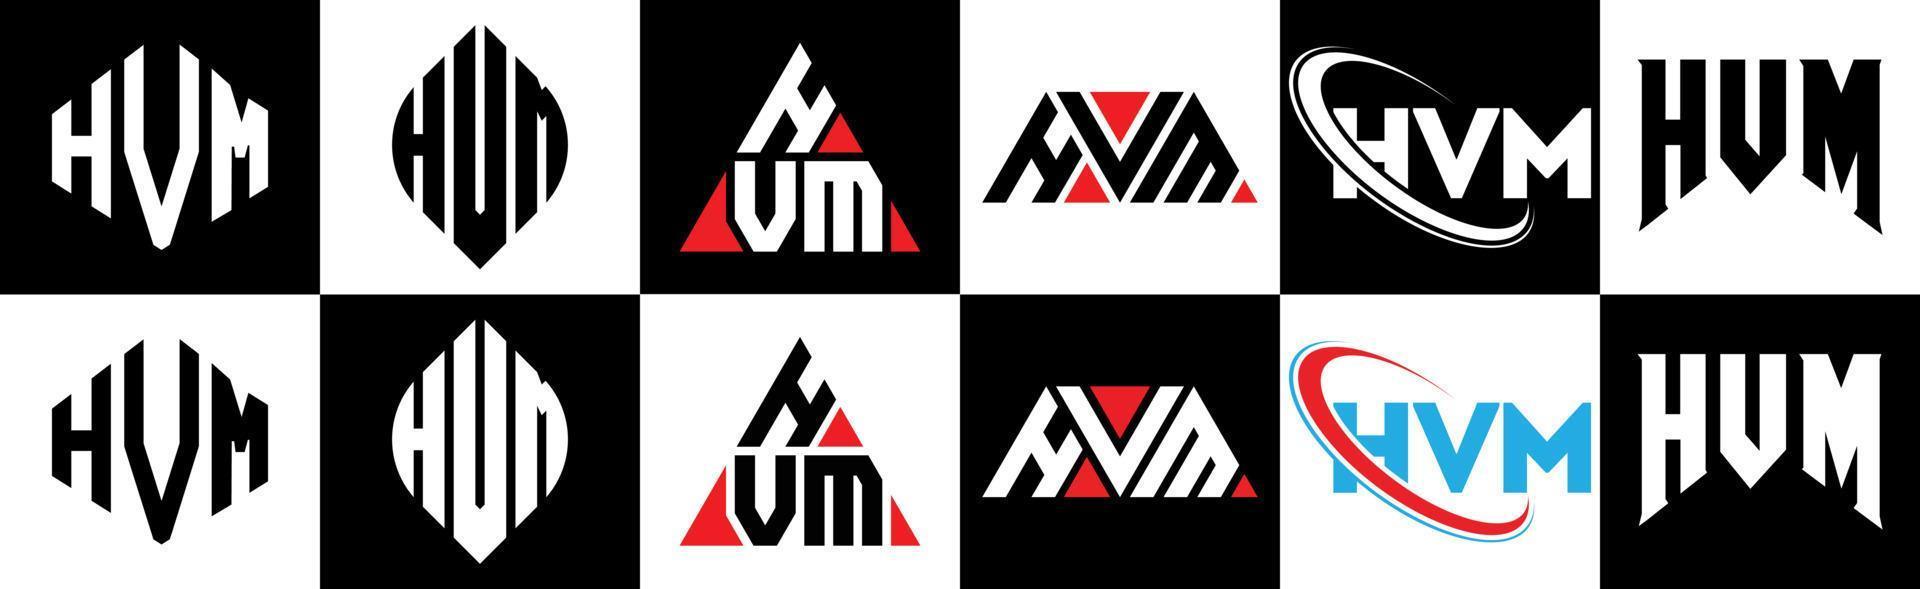 hvm-Buchstaben-Logo-Design in sechs Stilen. hvm polygon, kreis, dreieck, hexagon, flacher und einfacher stil mit schwarz-weißem buchstabenlogo in einer zeichenfläche. HVM minimalistisches und klassisches Logo vektor